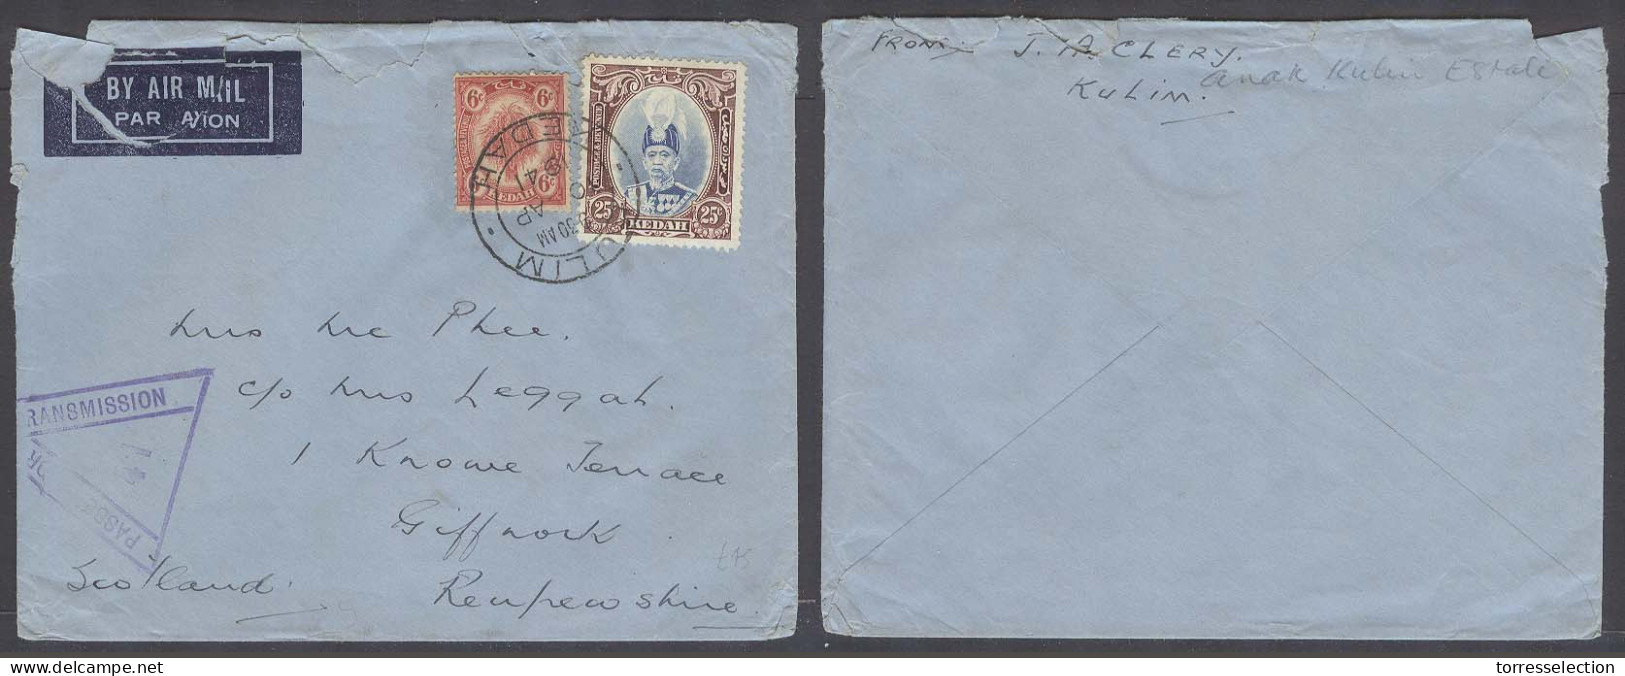 MALAYSIA. 1941 (10 April). Kulim, Kedah - Scotland, UK. Air Fkd Kedah Stamps, 31c Rate Censor Cachet. Anak Kulim State.  - Malaysia (1964-...)